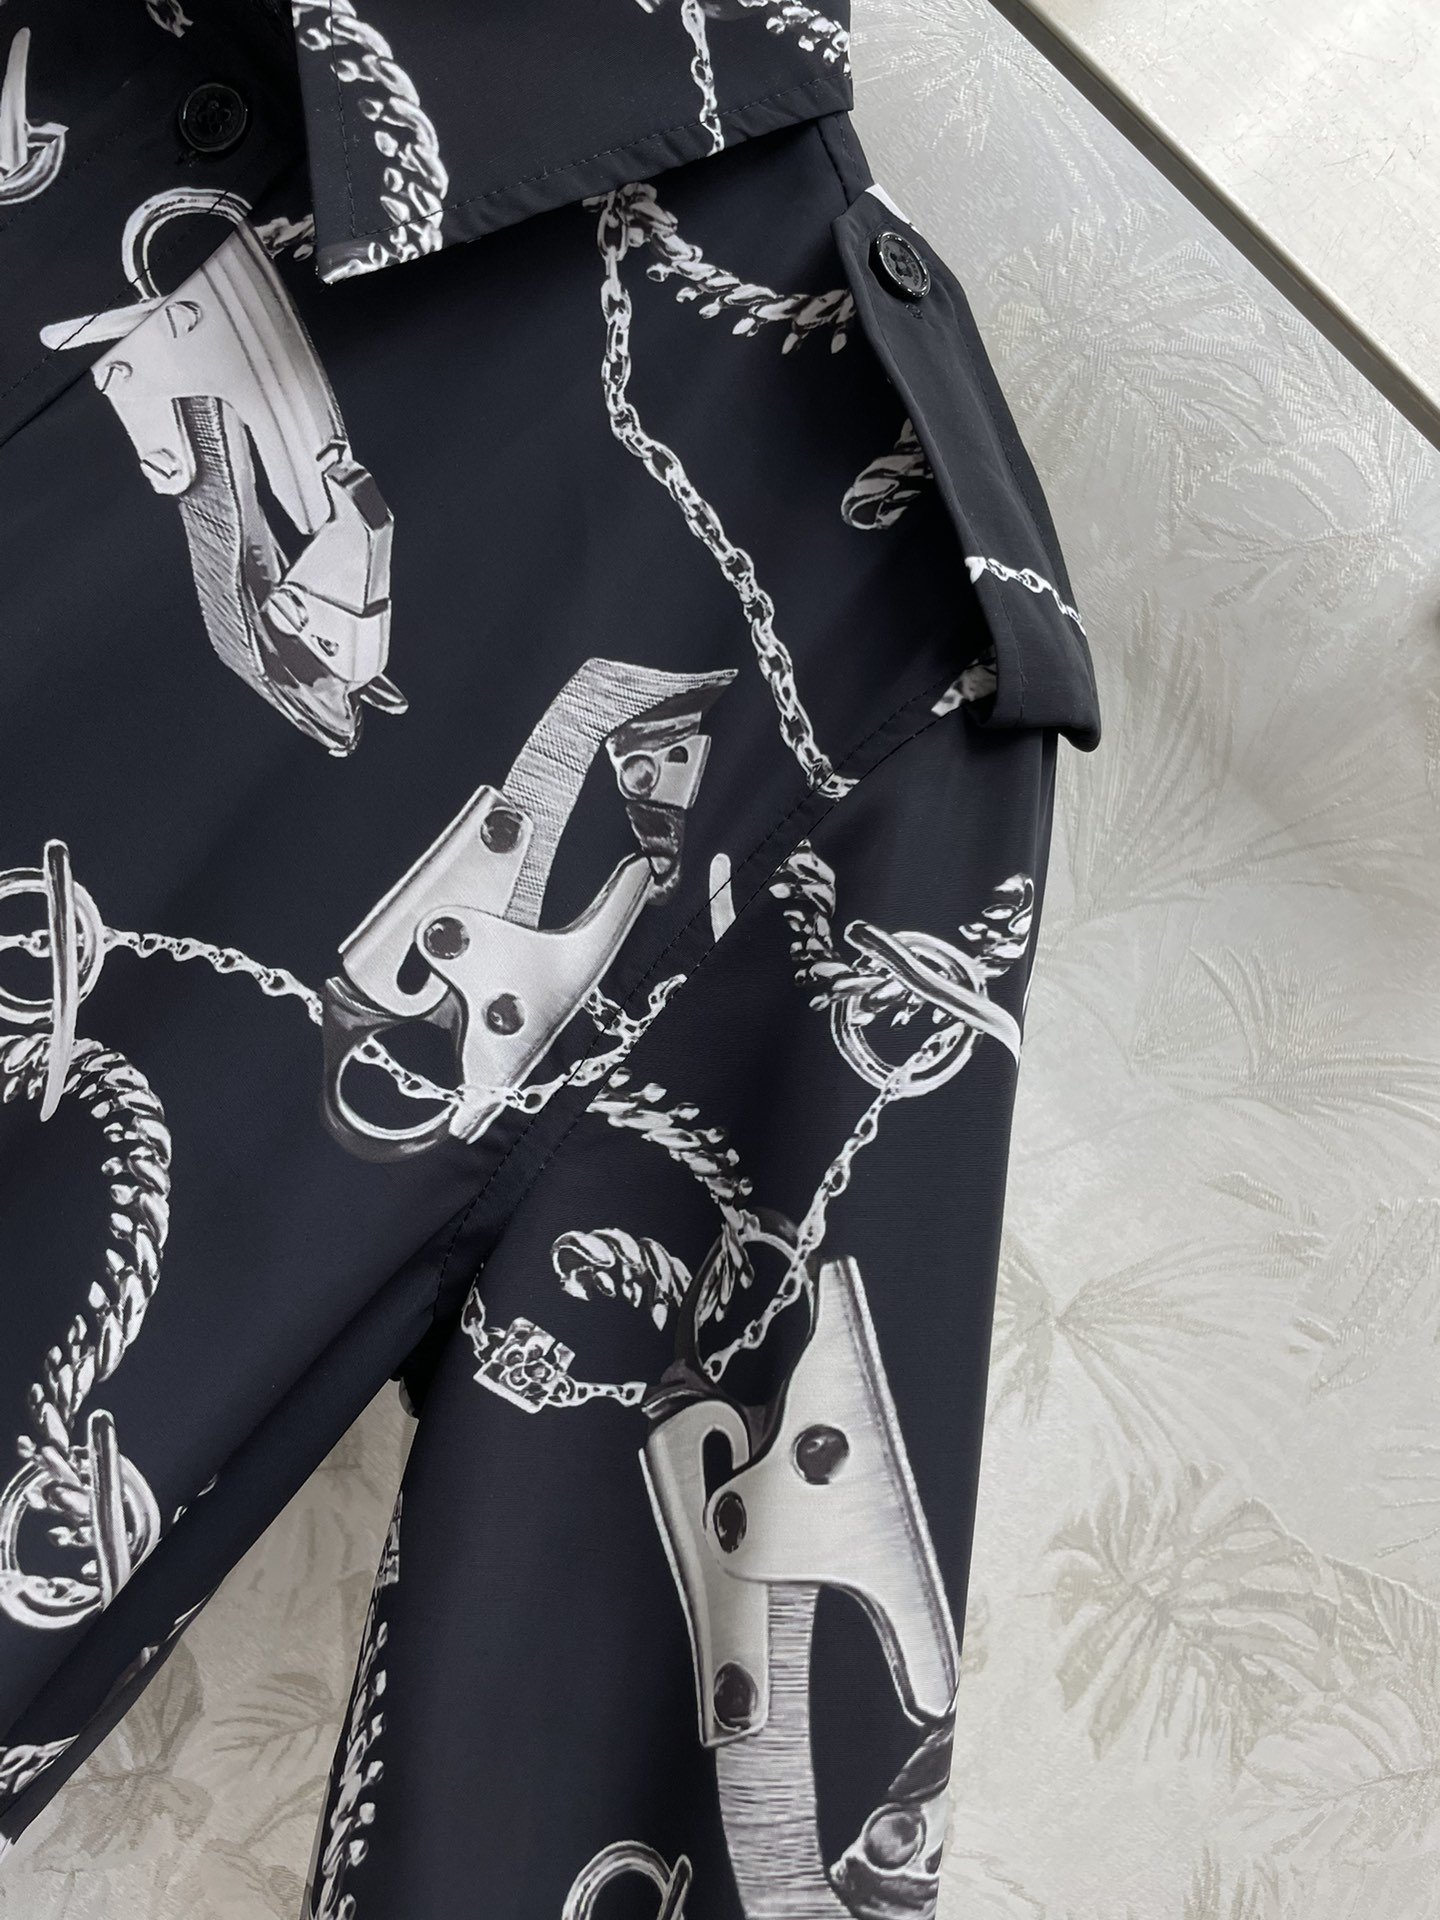 Bur24春夏新款华丽配件图案印花衬衫赋予摩登质感搭肩式设计带一种工装风时髦感阔型剪裁自带慵懒和时髦随意